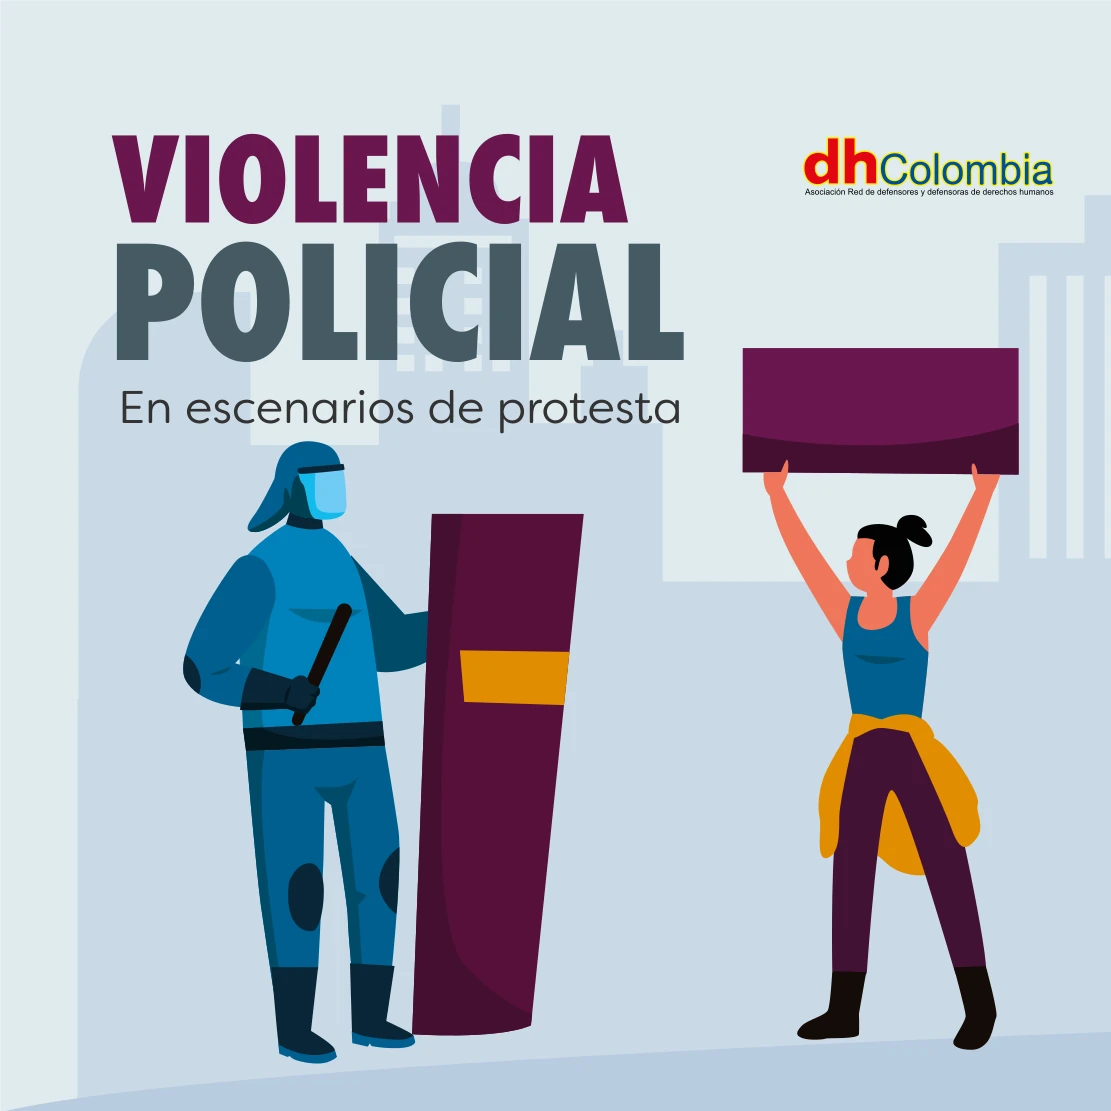 dhColombia Capacitación y gestión del conocimiento en materia de litigio estratégico 6 01 violencia policial